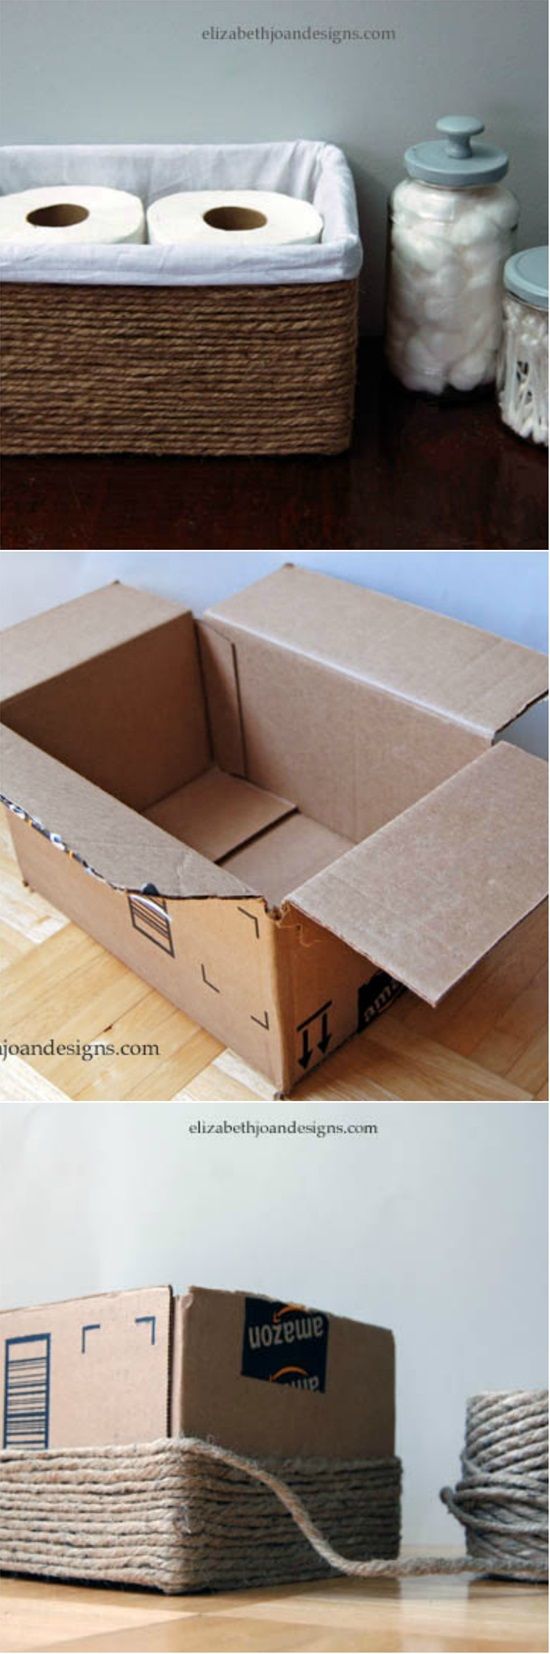 Crea un organizador con cajas. # DIY ¿Qué te parece? www.quintaencinos.com